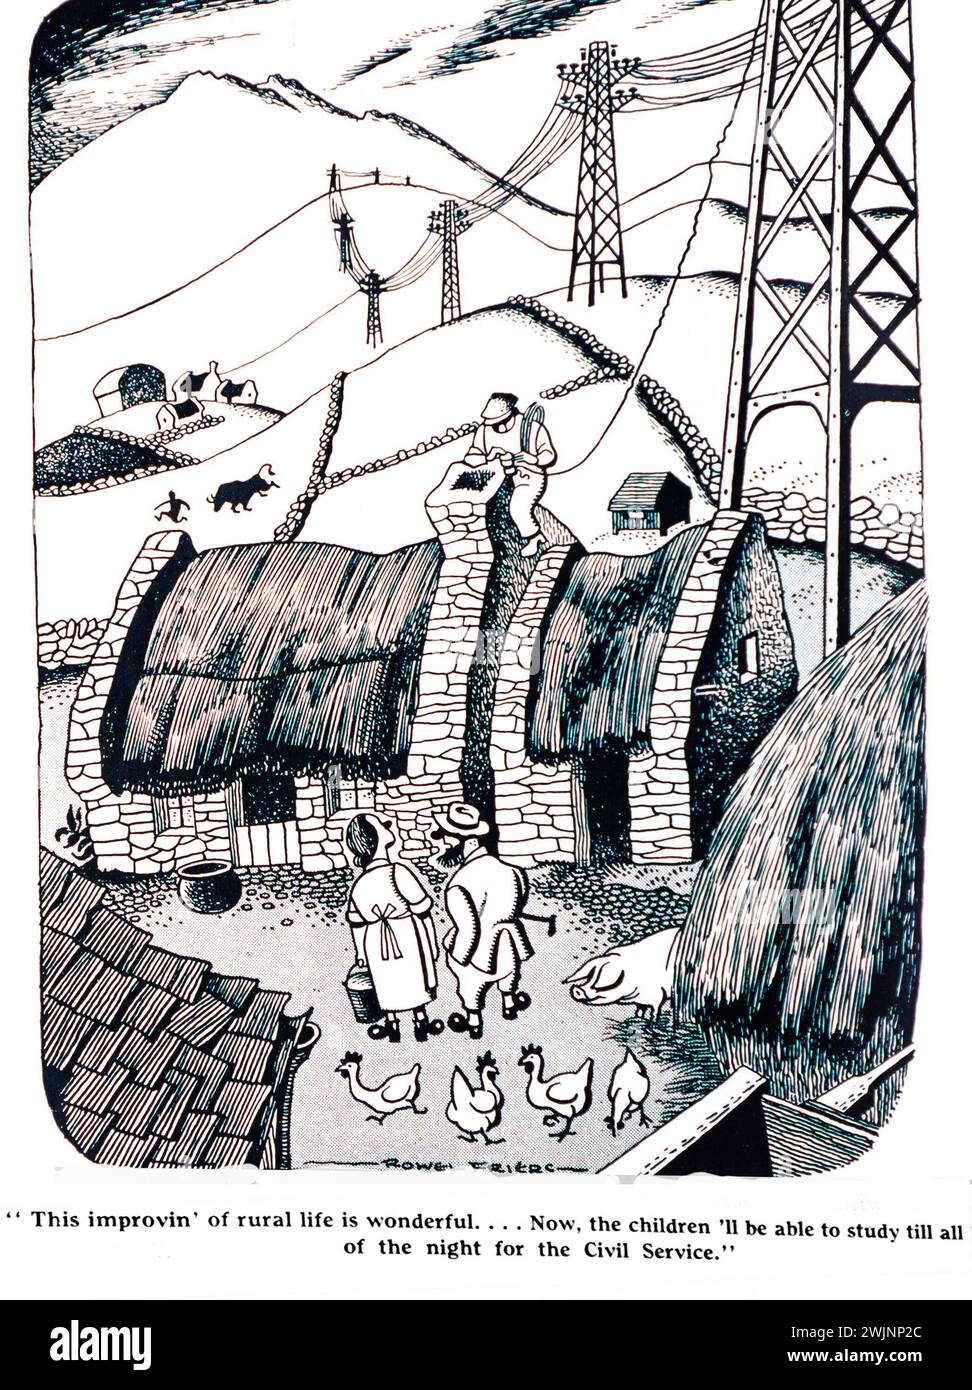 Une caricature du Dublin opinion Magazine montrant un chalet au toit de chaume connecté au réseau électrique dans le cadre du programme d'électrification rurale en Irlande. Le dessin montre deux personnes qui accueillent les améliorations afin que les enfants puissent rester debout toute la nuit à étudier pour la fonction publique. Banque D'Images